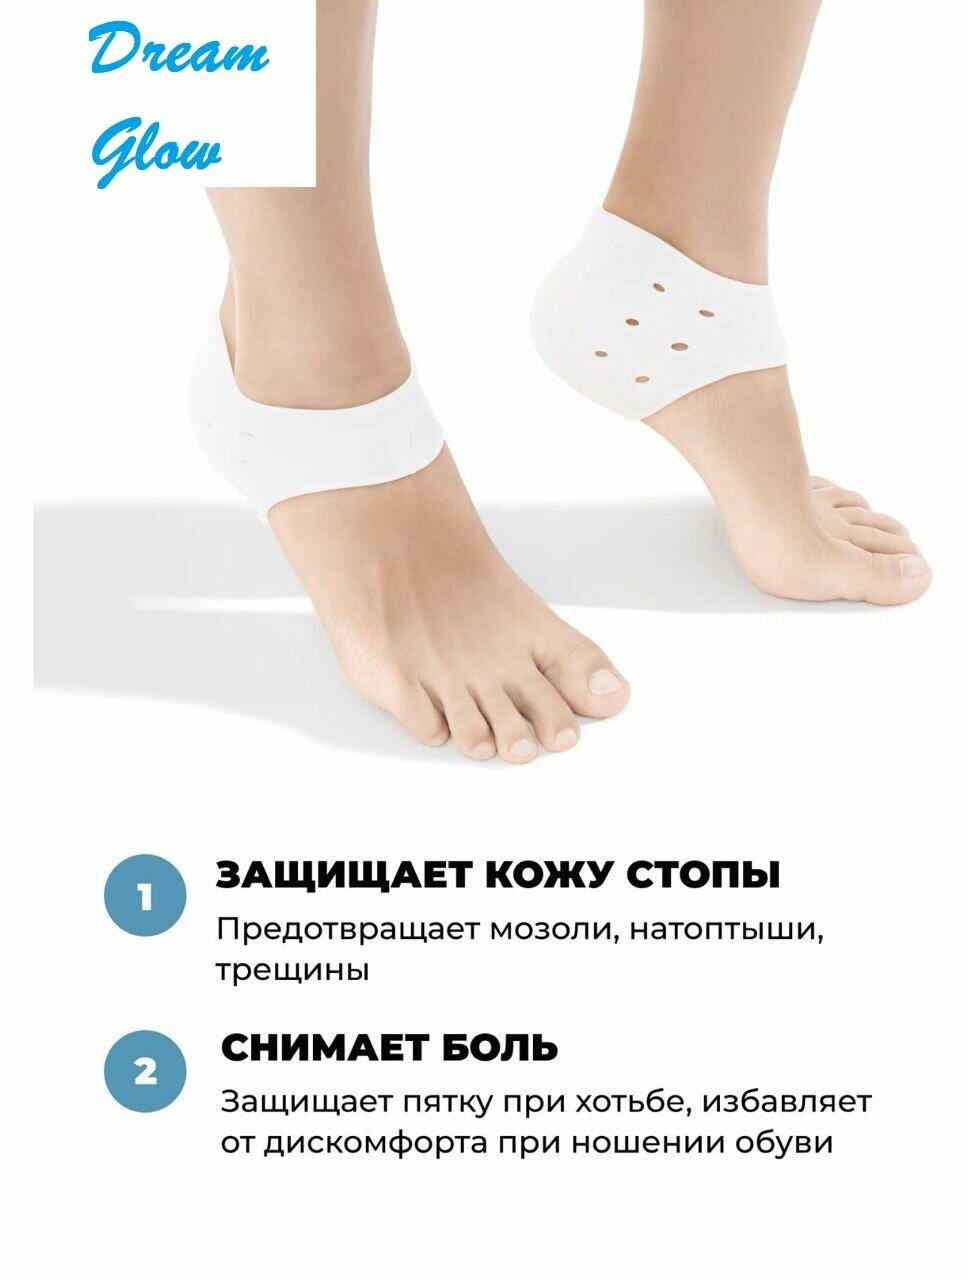 Силиконовые накладки носочки для пяток ног от натирания, напяточники от мозолей и трещин на пятках